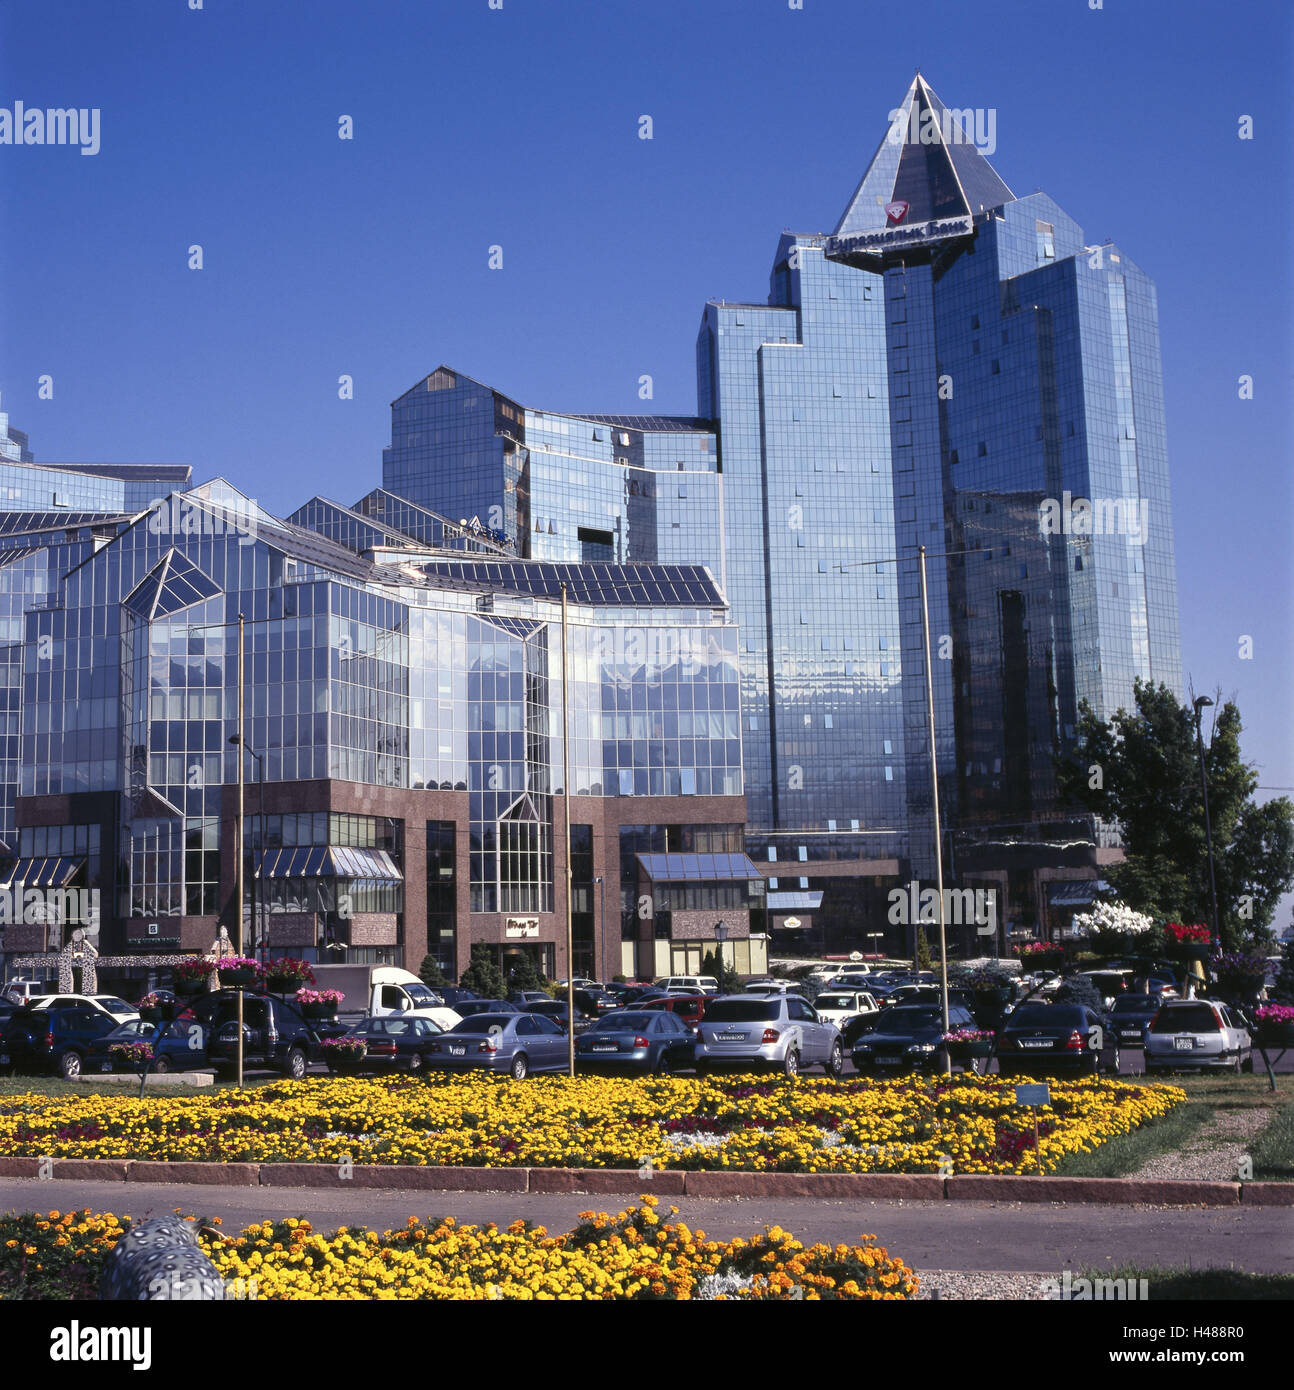 Il Kazakistan, Almaty, banca, fuori, edificio, facciata, vetro anteriore, cielo blu, finanze, parcheggio, veicoli, fiori, Foto Stock